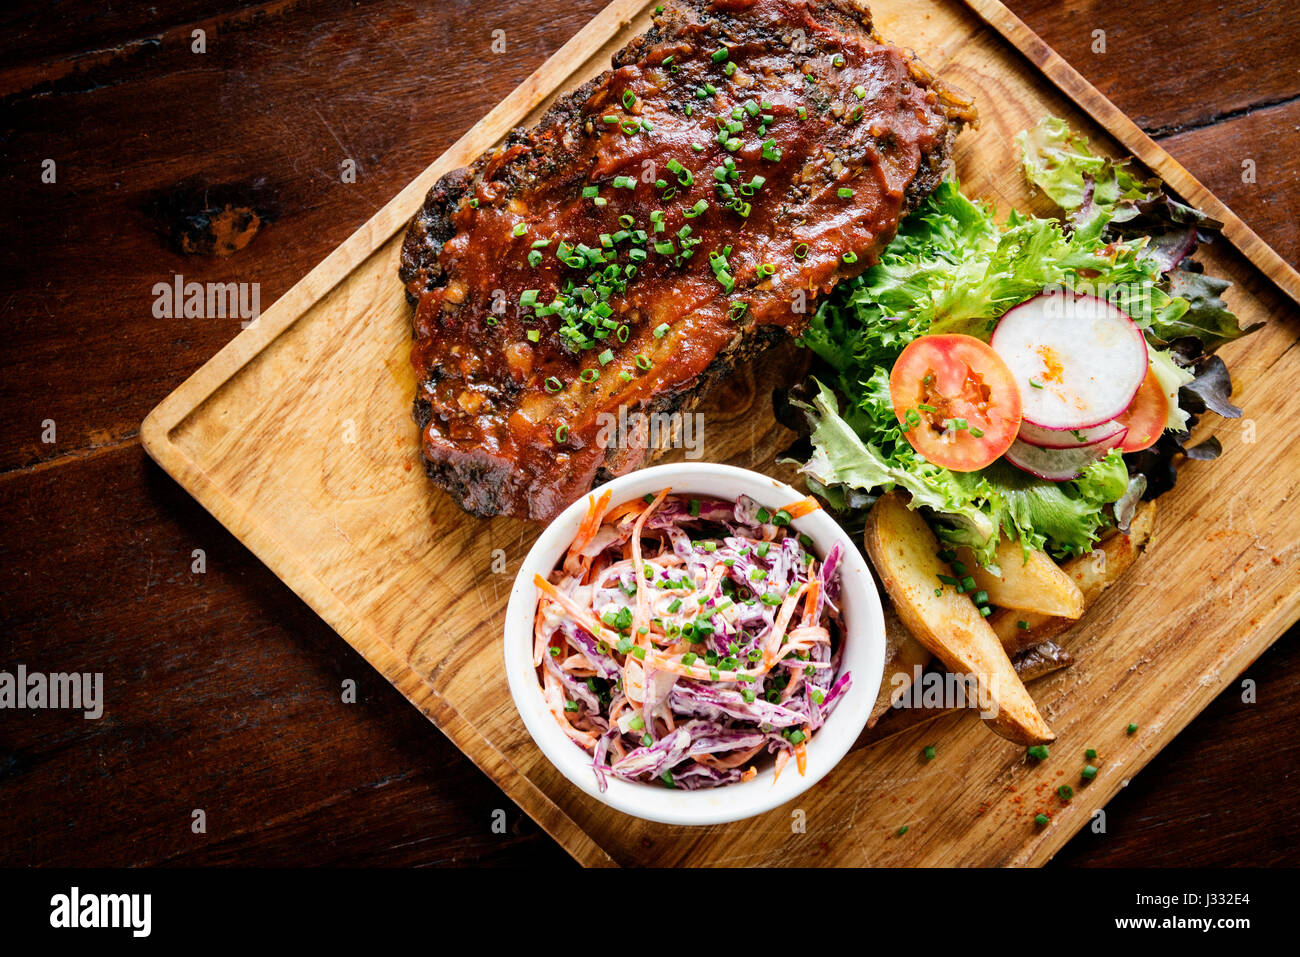 La carne di maiale bbq ribs con coleslaw insalata e pasto fisso Foto Stock